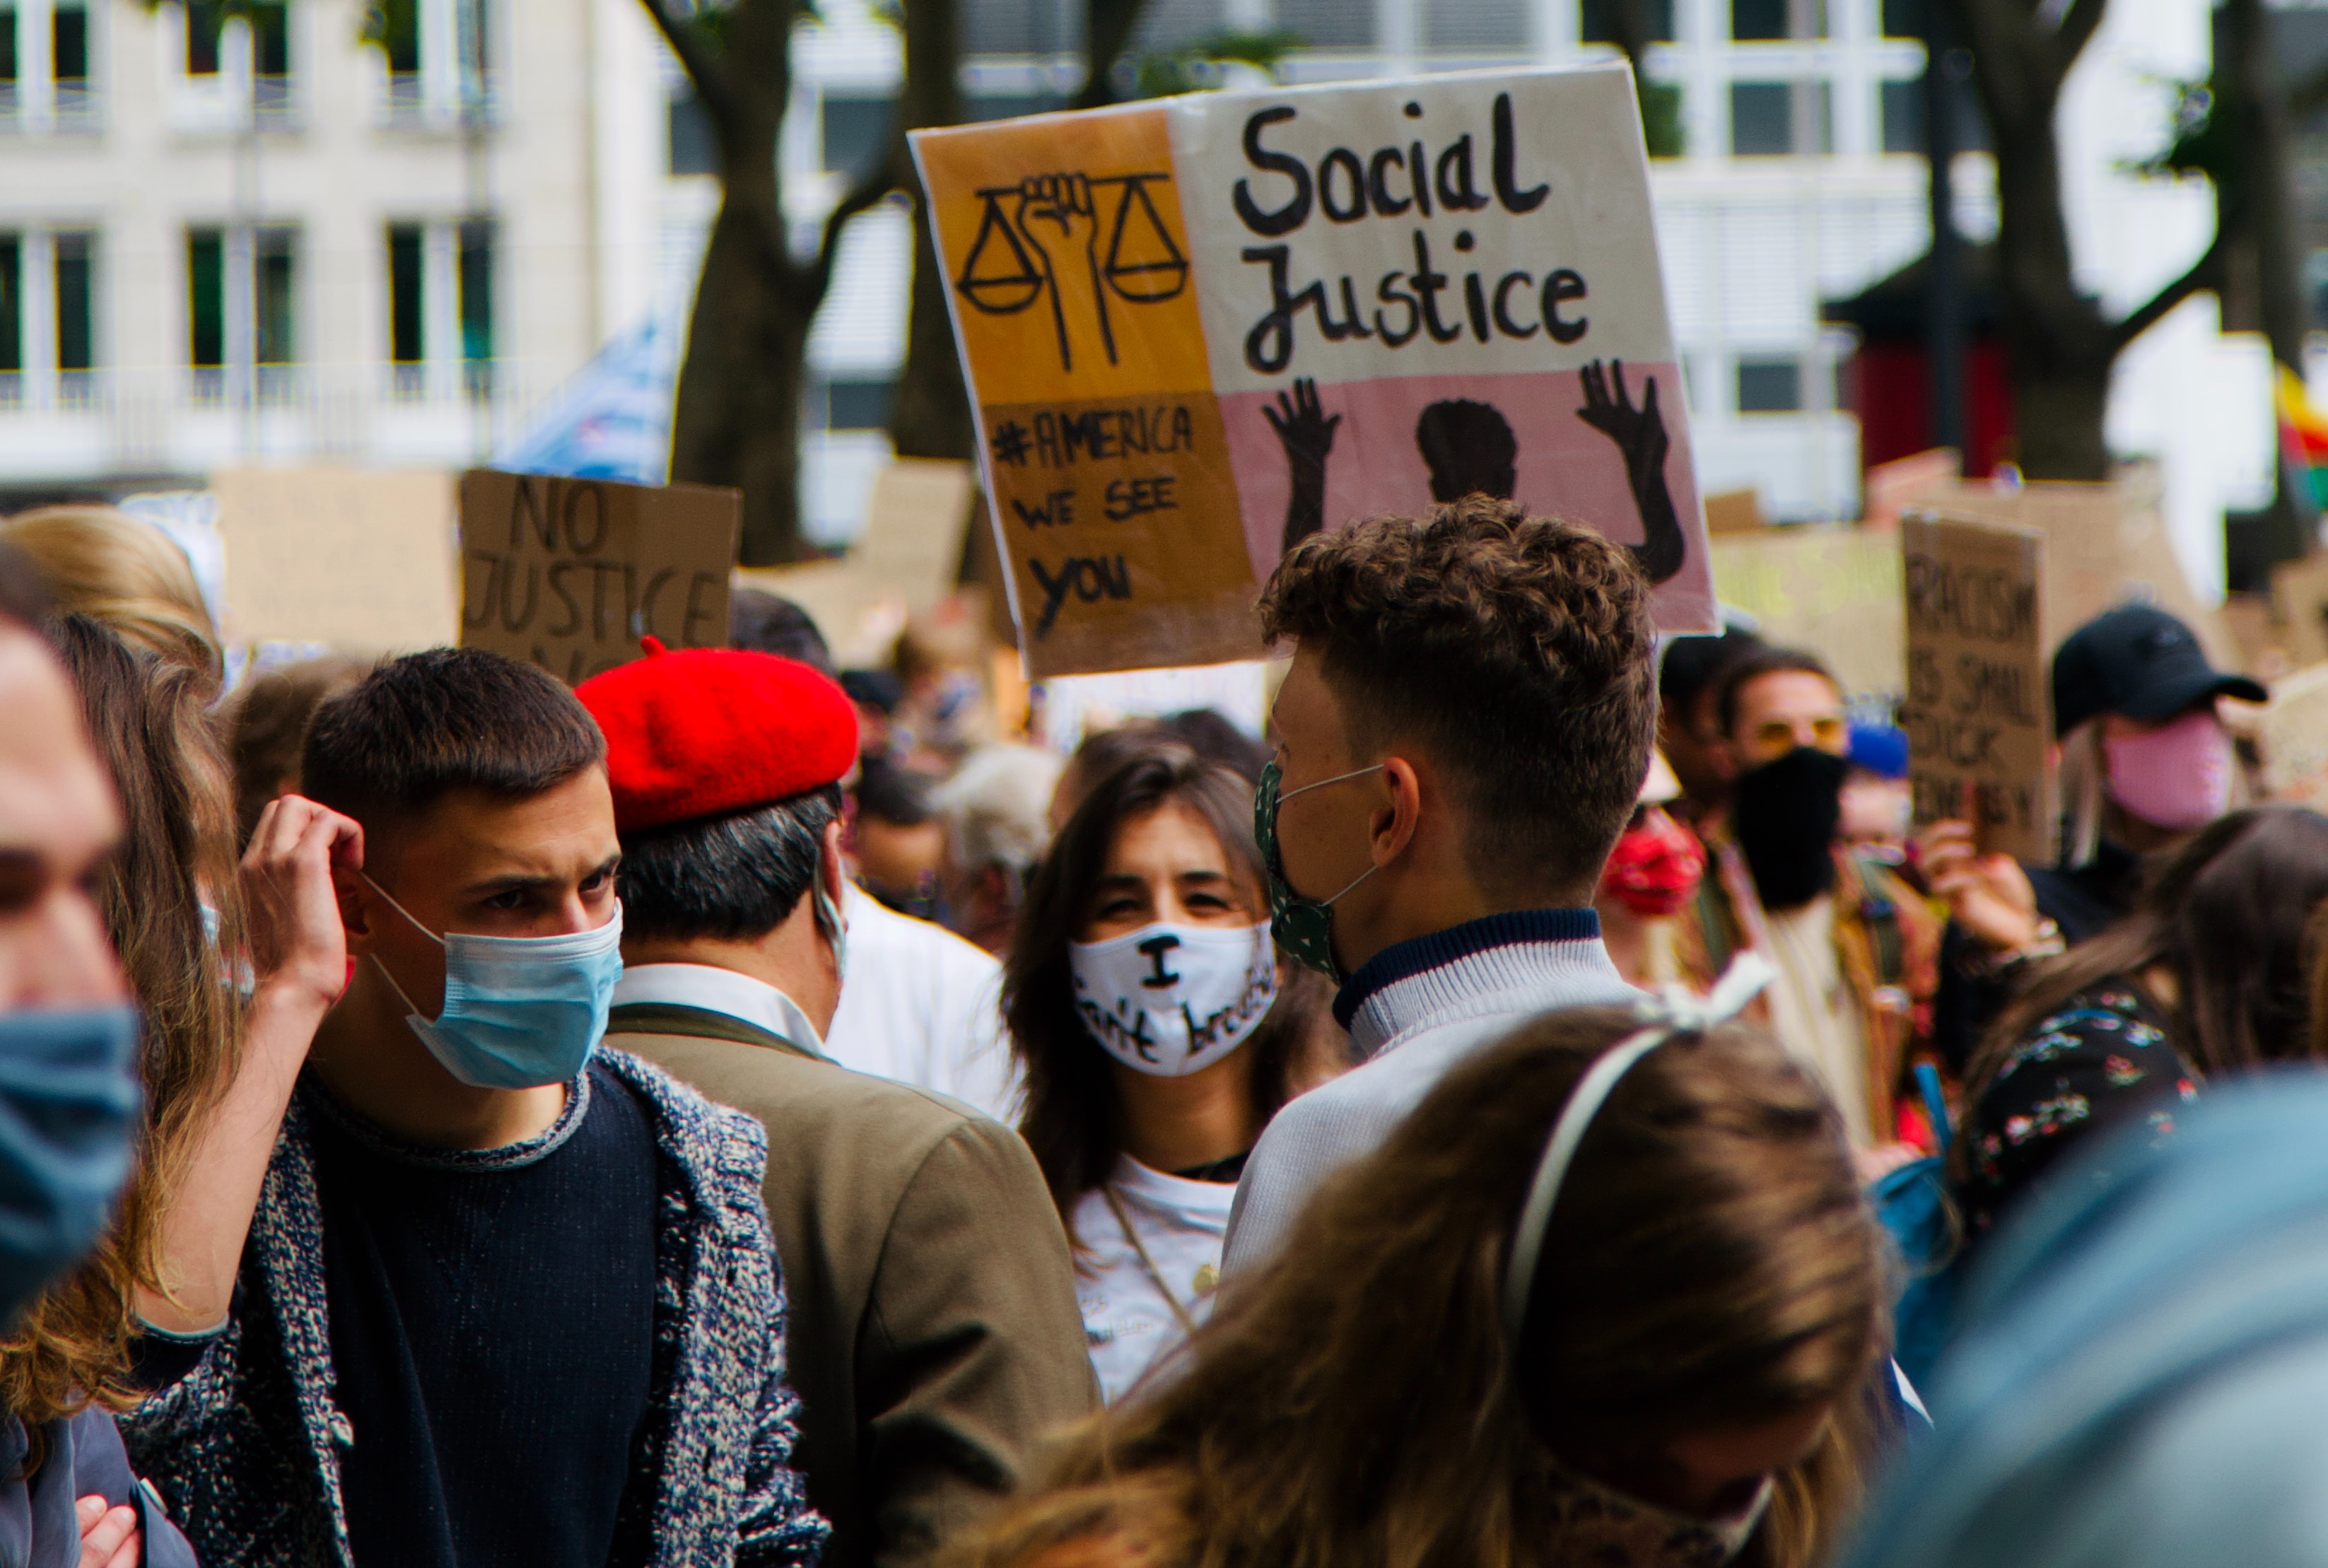 年轻人抗议种族歧视戴着面具和标语,呼吁社会正义